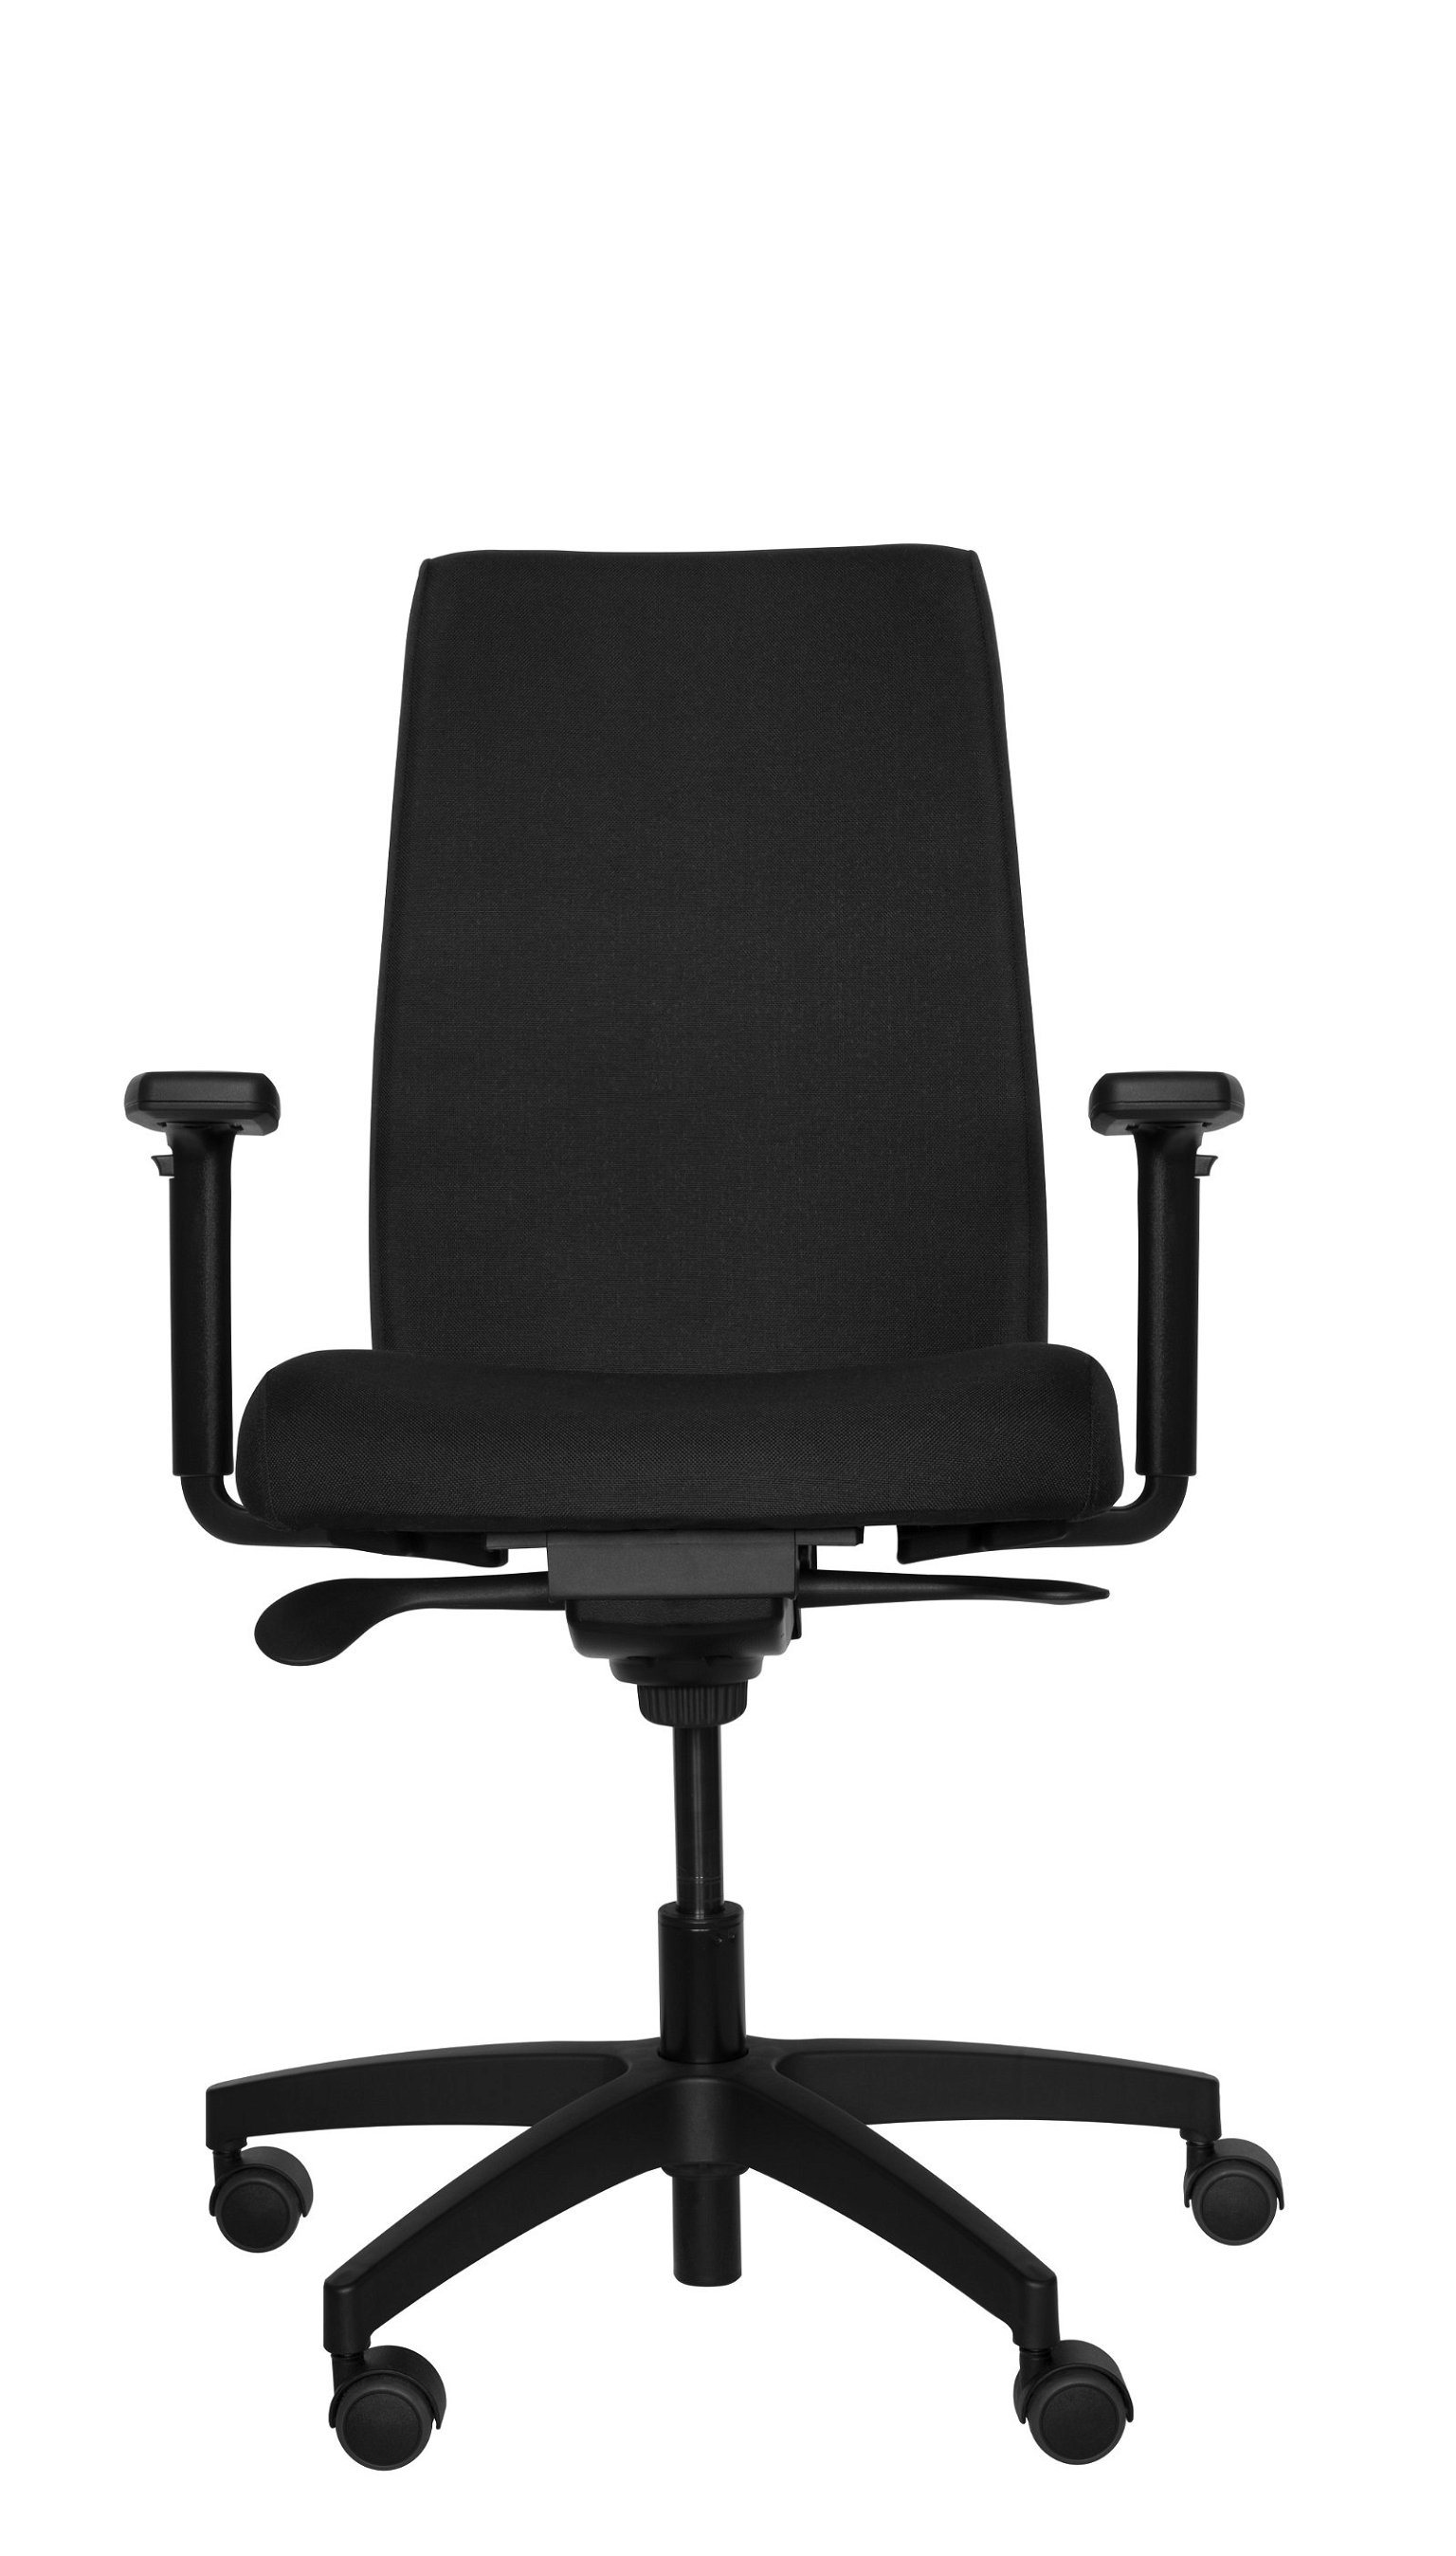 Biuro kėdė Tronhill Infra A, juodos spalvos - 2